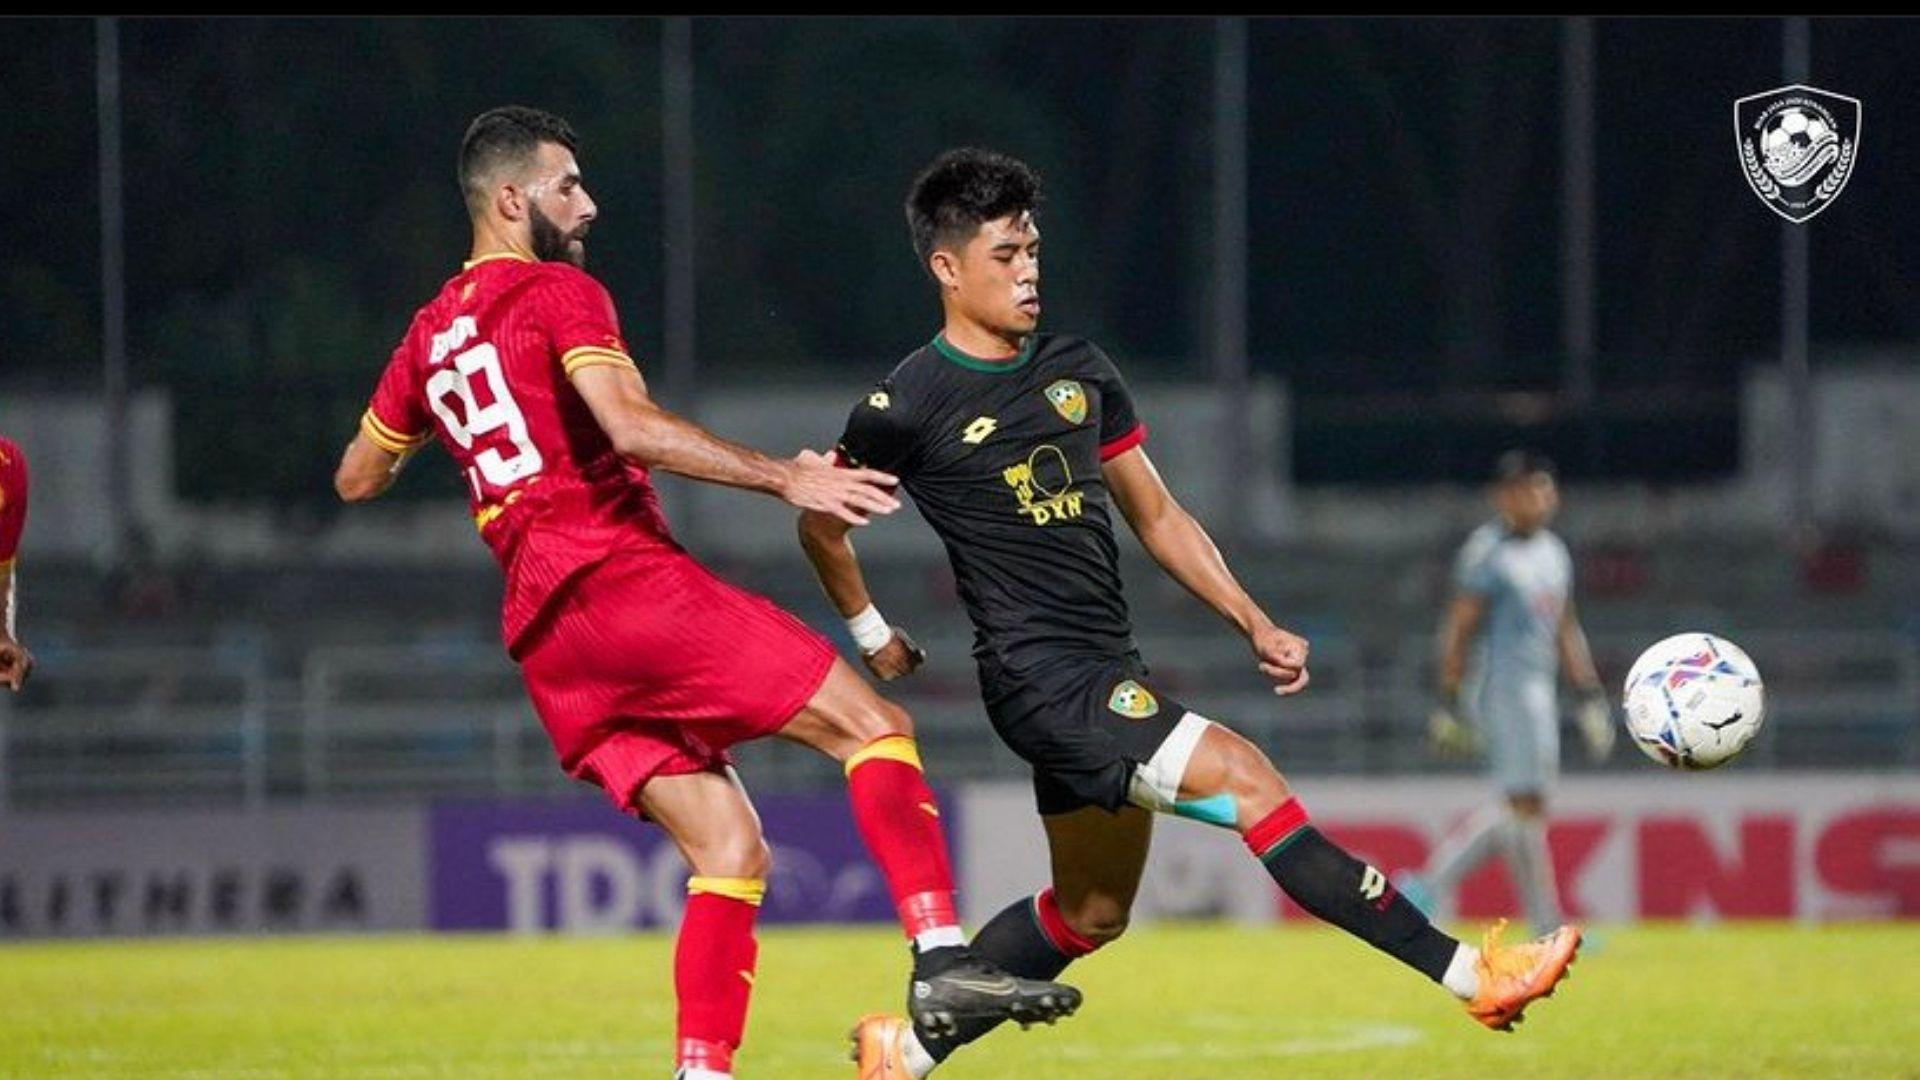 Syafiq Kedah 2 Kepakaran Syafiq Ahmad Ditagih Robek Gawang Penang FC